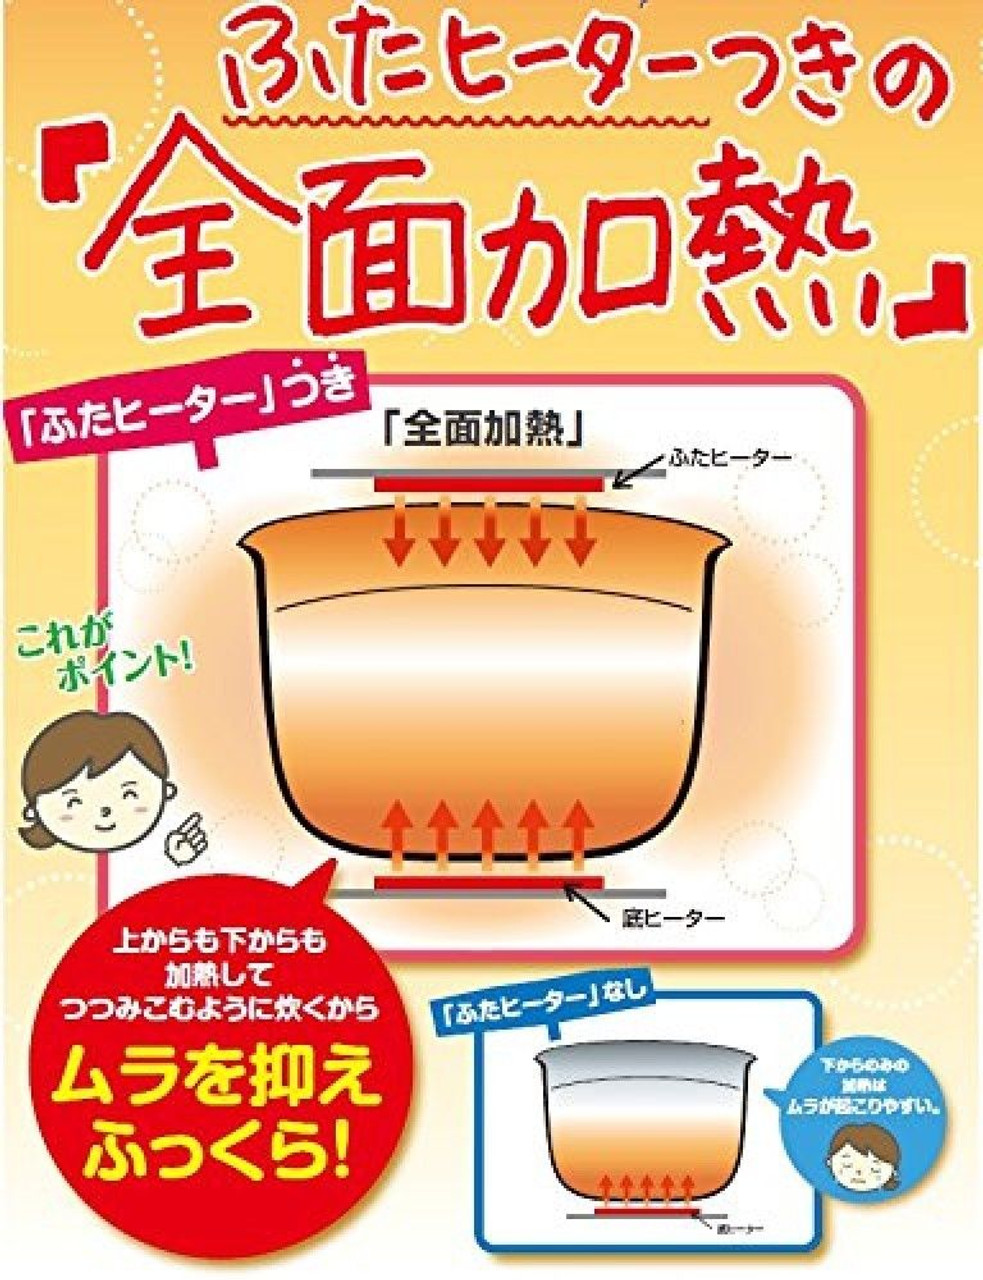 Zojirushi rice cooker microcomputer Formula 3 Cups Go White NL-BA05-WA